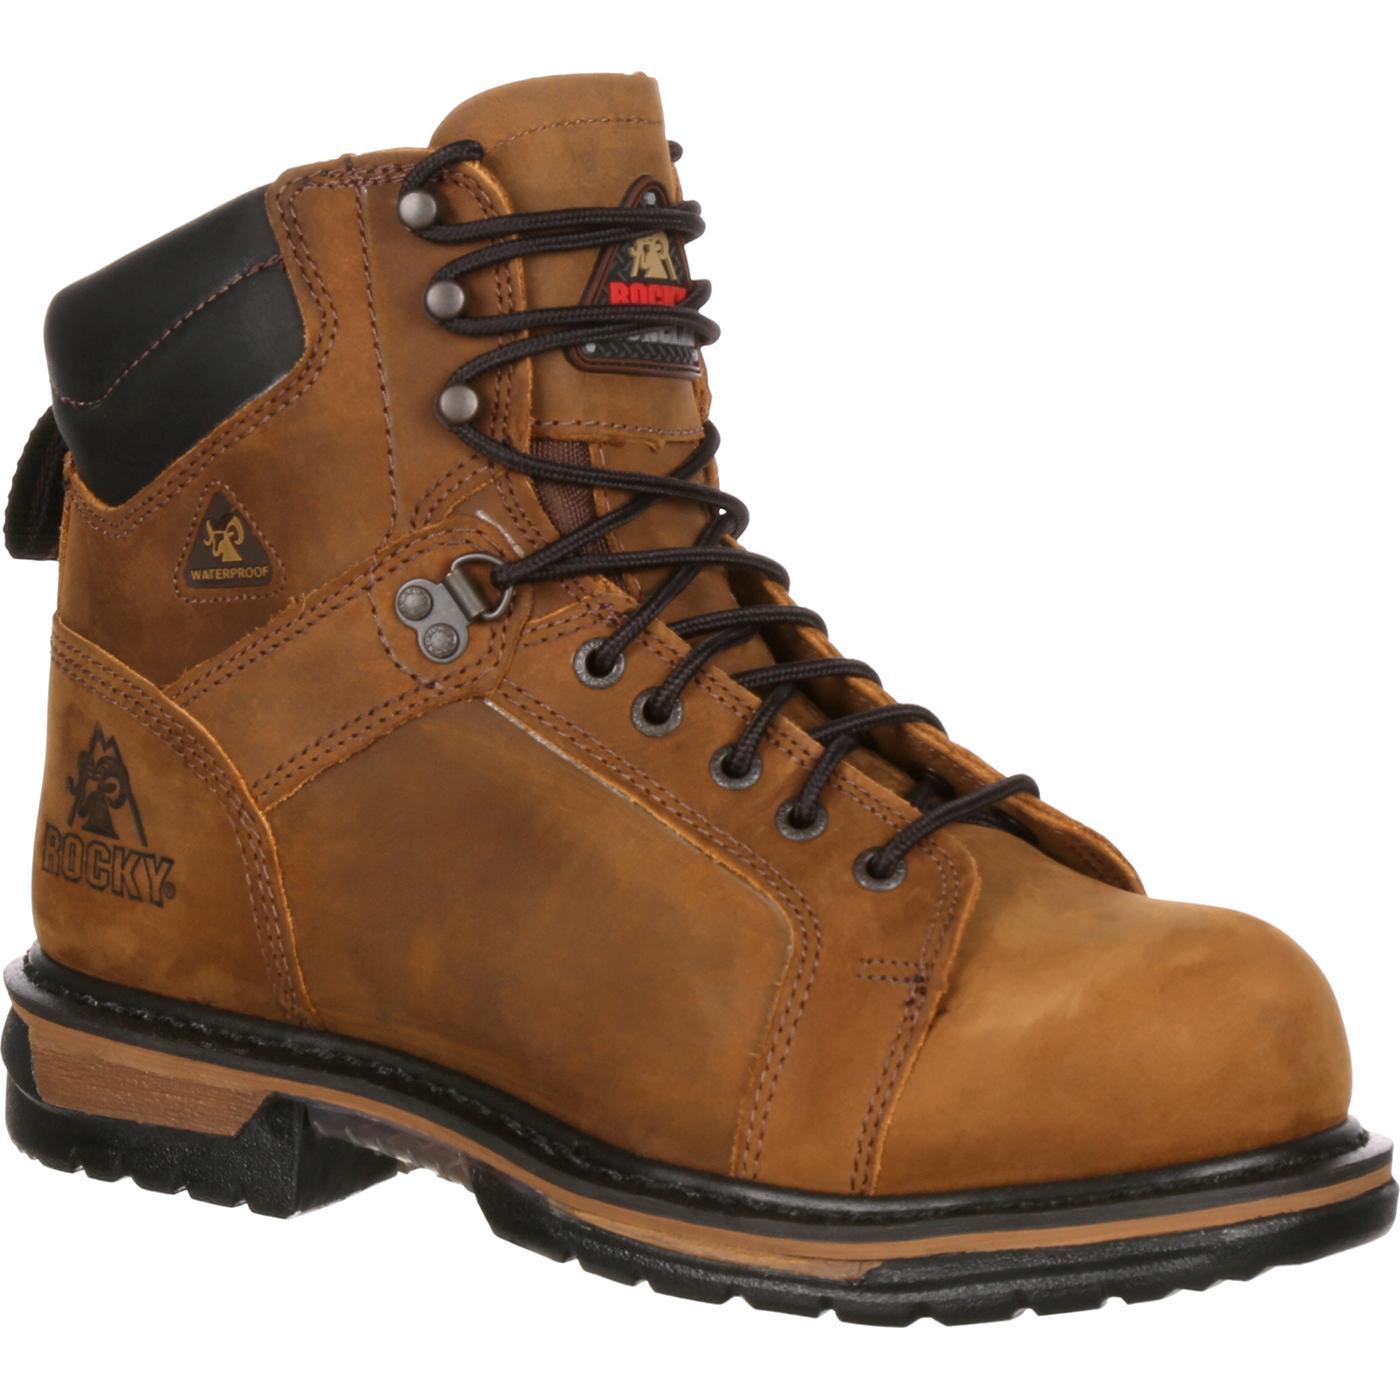 Rocky IronClad Waterproof Steel Toe Work Boots - Style #6701